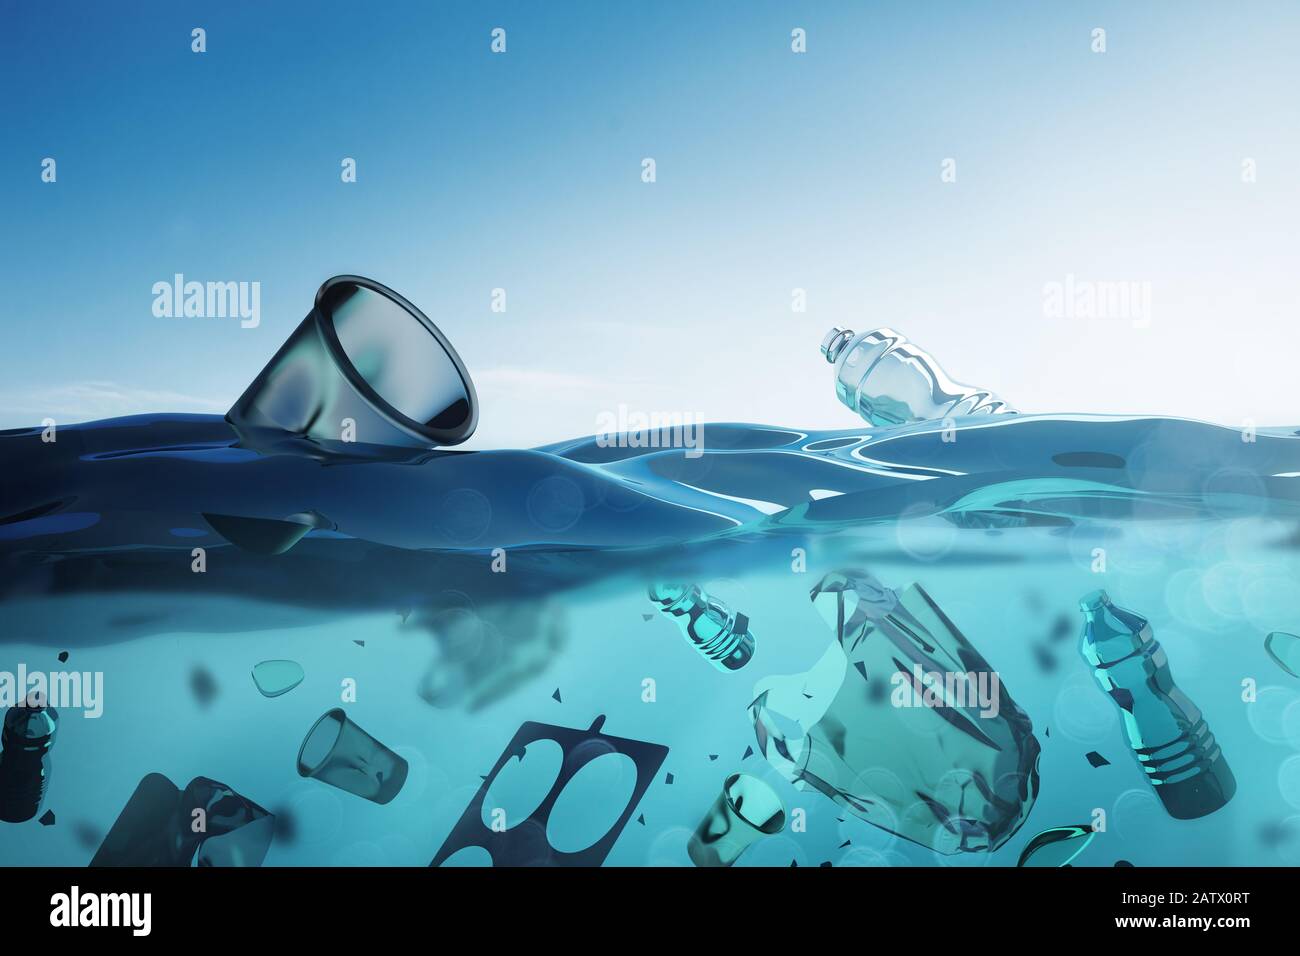 Contaminación del océano - Bolsas flotantes y residuos de plástico humano en el océano abierto. Ilustración 3D. Foto de stock